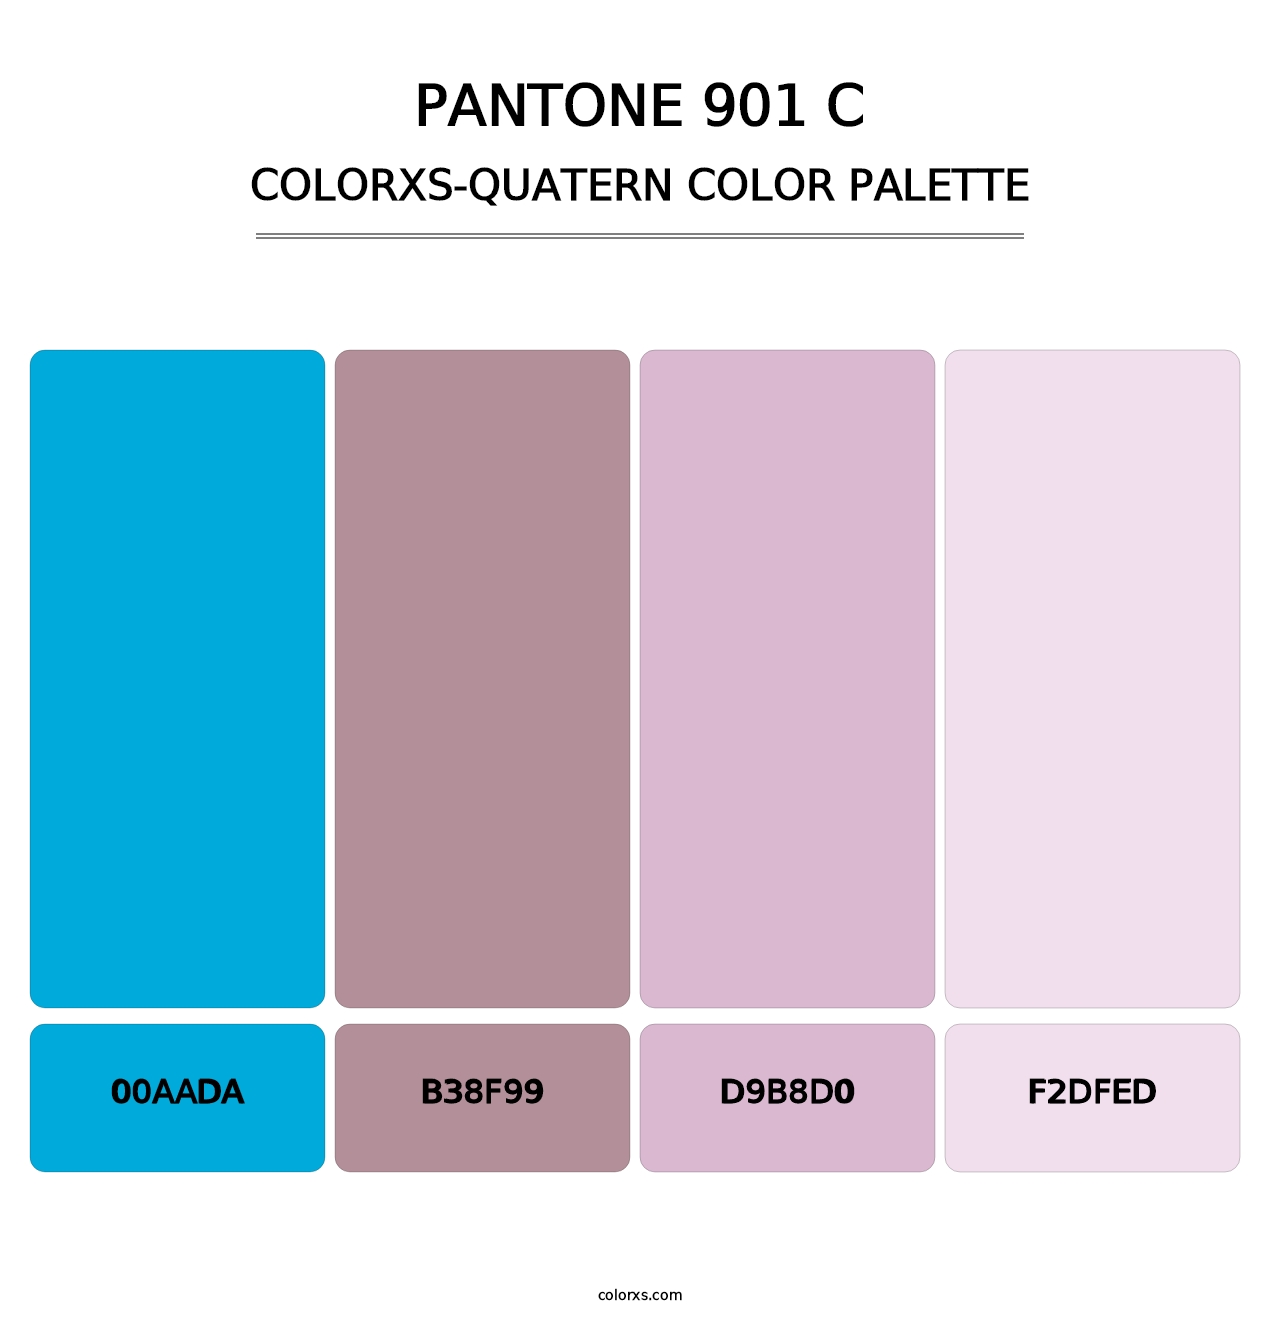 PANTONE 901 C - Colorxs Quatern Palette